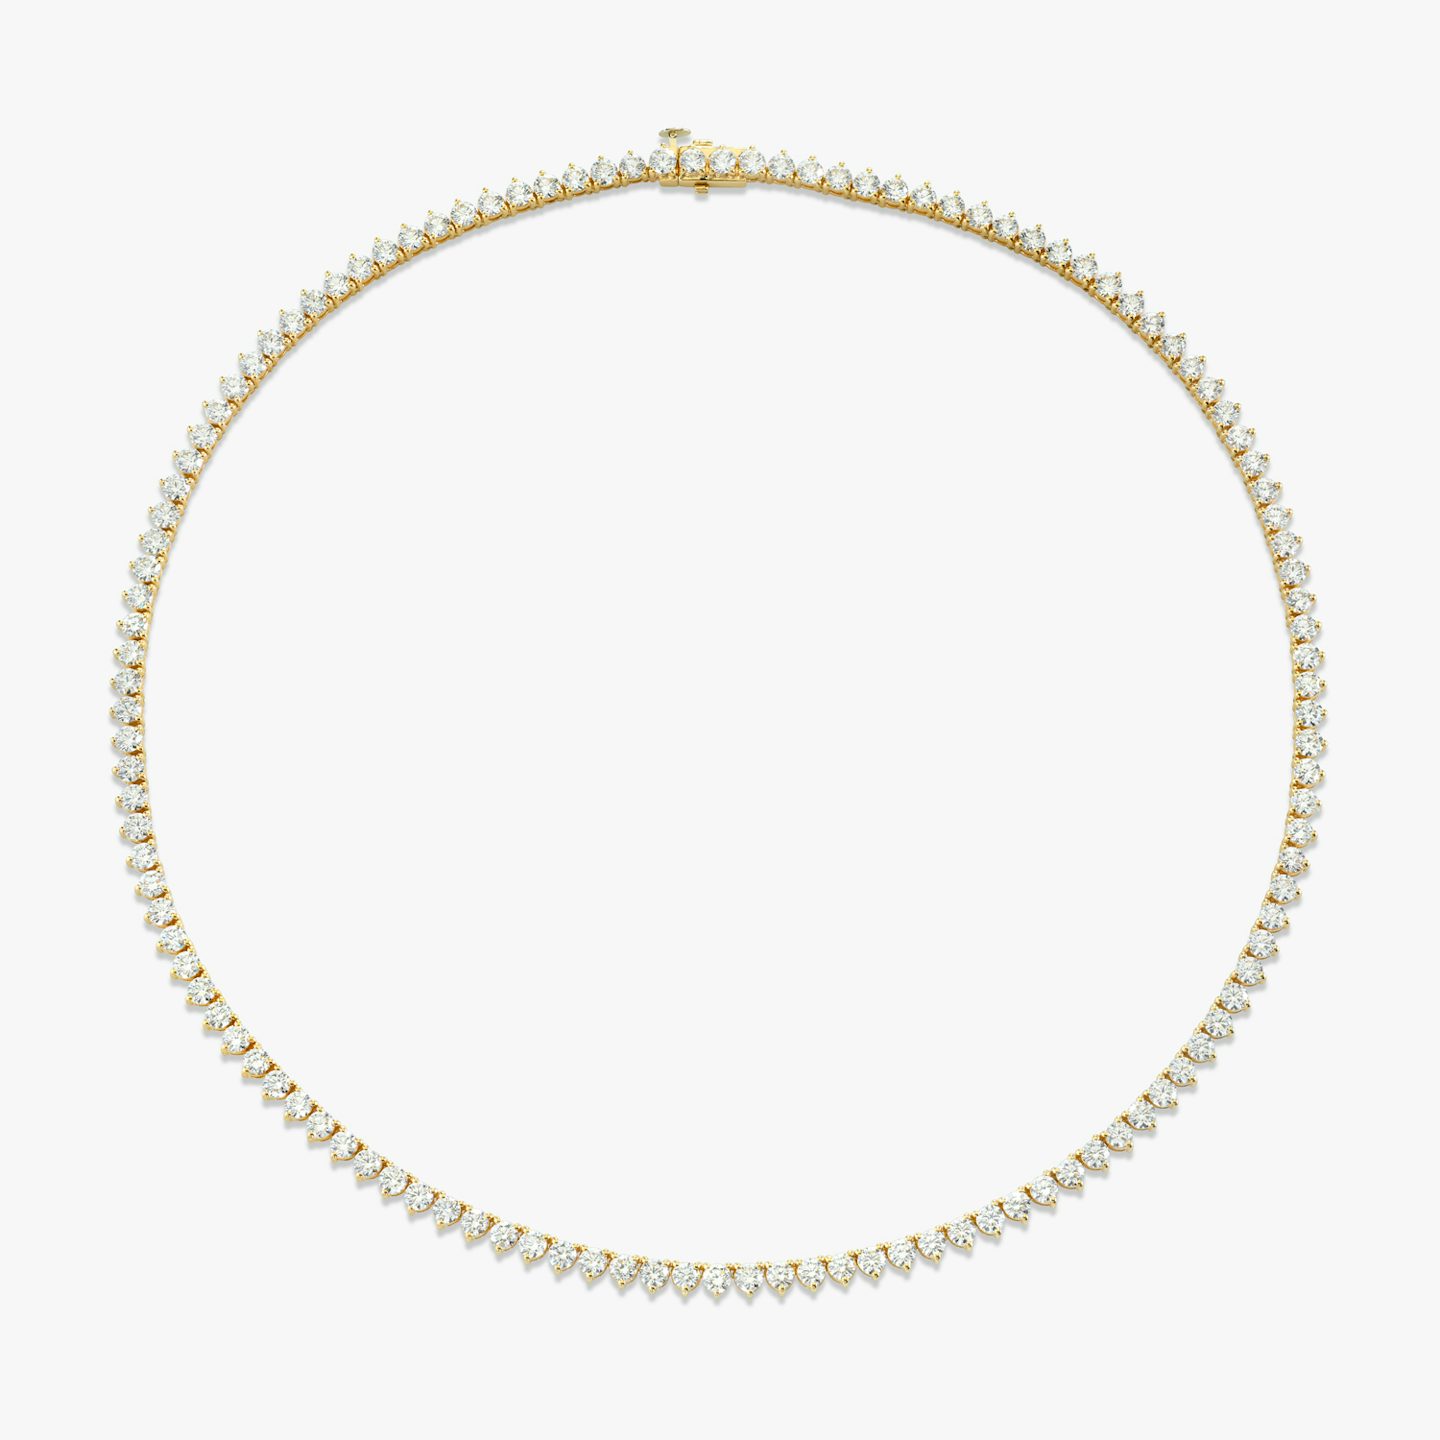 Collar de Tenis | Brillante | 14k | Oro amarillo de 18 quilates | Tamaño de los diamantes: Medium | Longitud de la cadena: 17